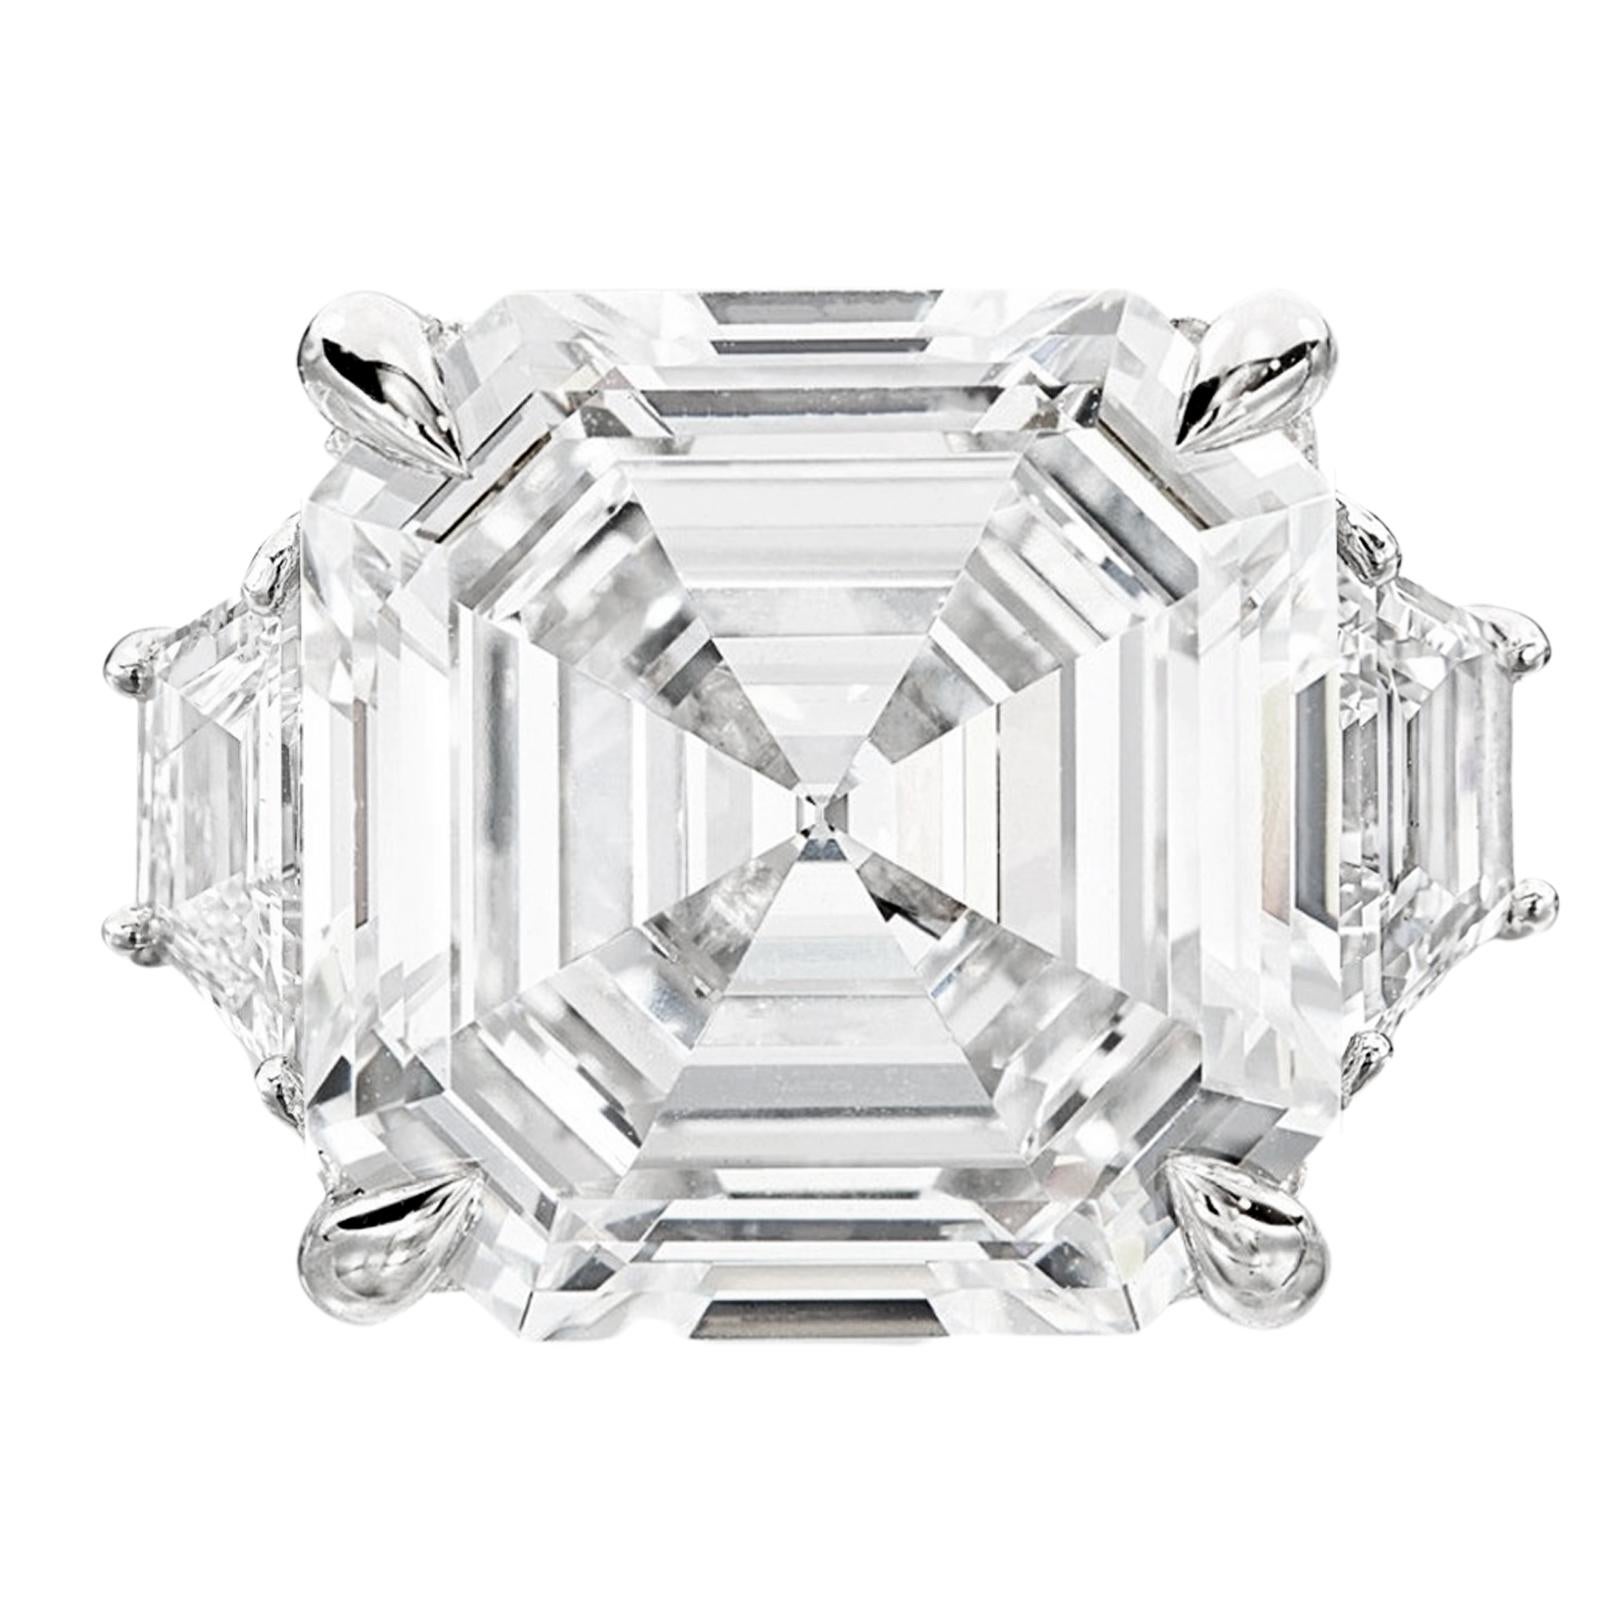 Diamant de taille Asscher certifié GIA, l'incarnation du raffinement et de la valeur d'investissement. Méticuleusement travaillé et serti dans du platine massif, ce diamant exceptionnel est accompagné de deux diamants trapézoïdaux captivants, créant